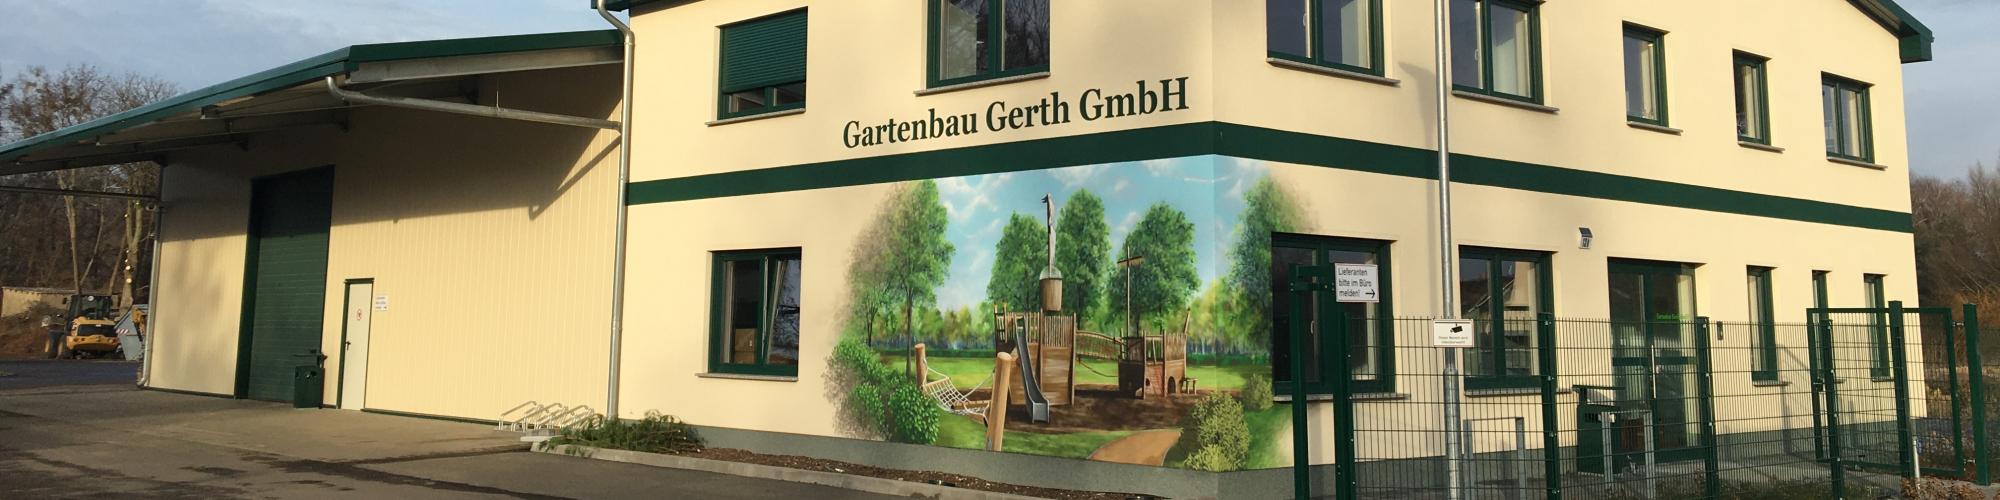 Gartenbau Gerth GmbH